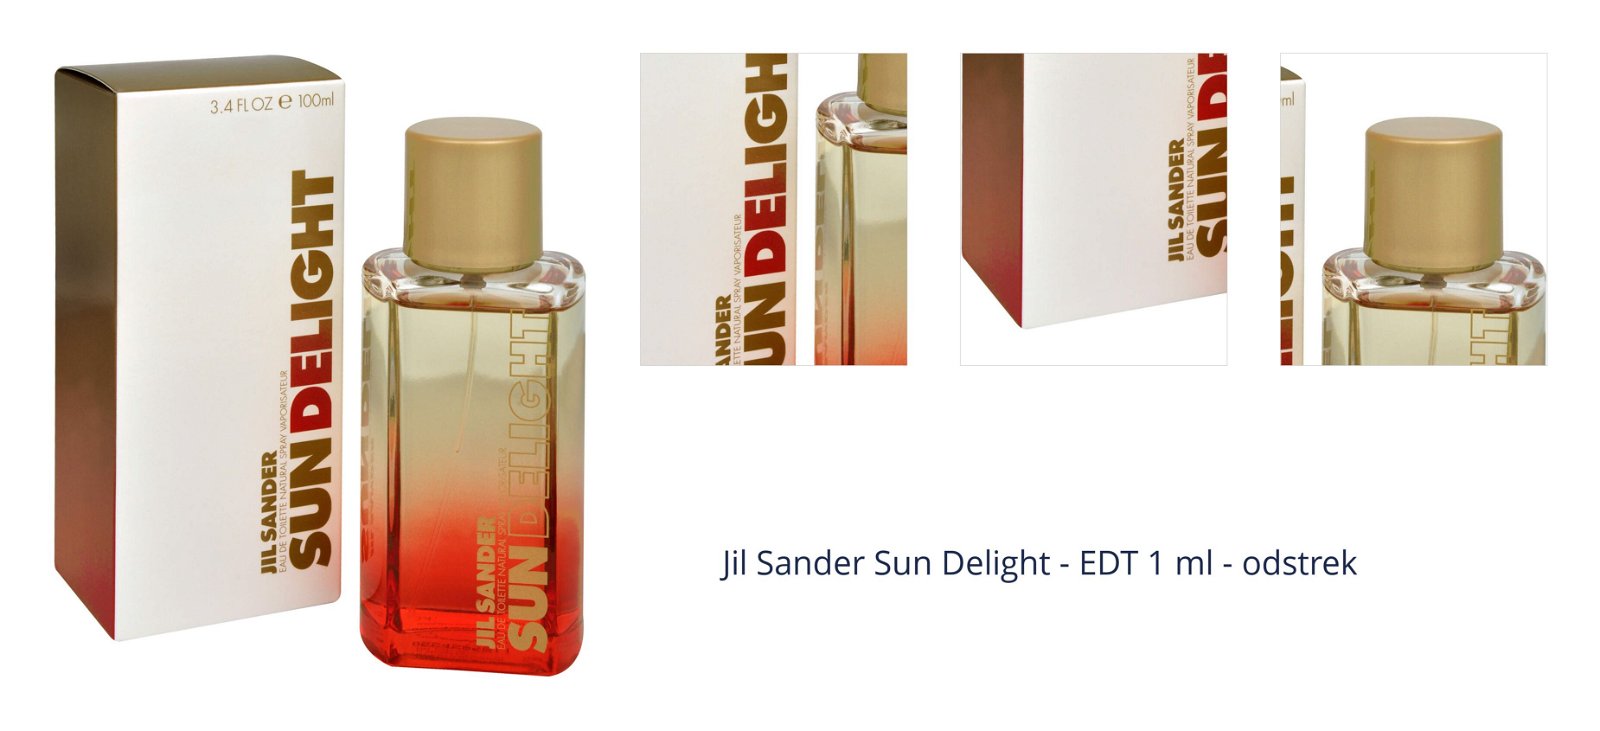 Jil Sander Sun Delight - EDT 1 ml - odstrek 1